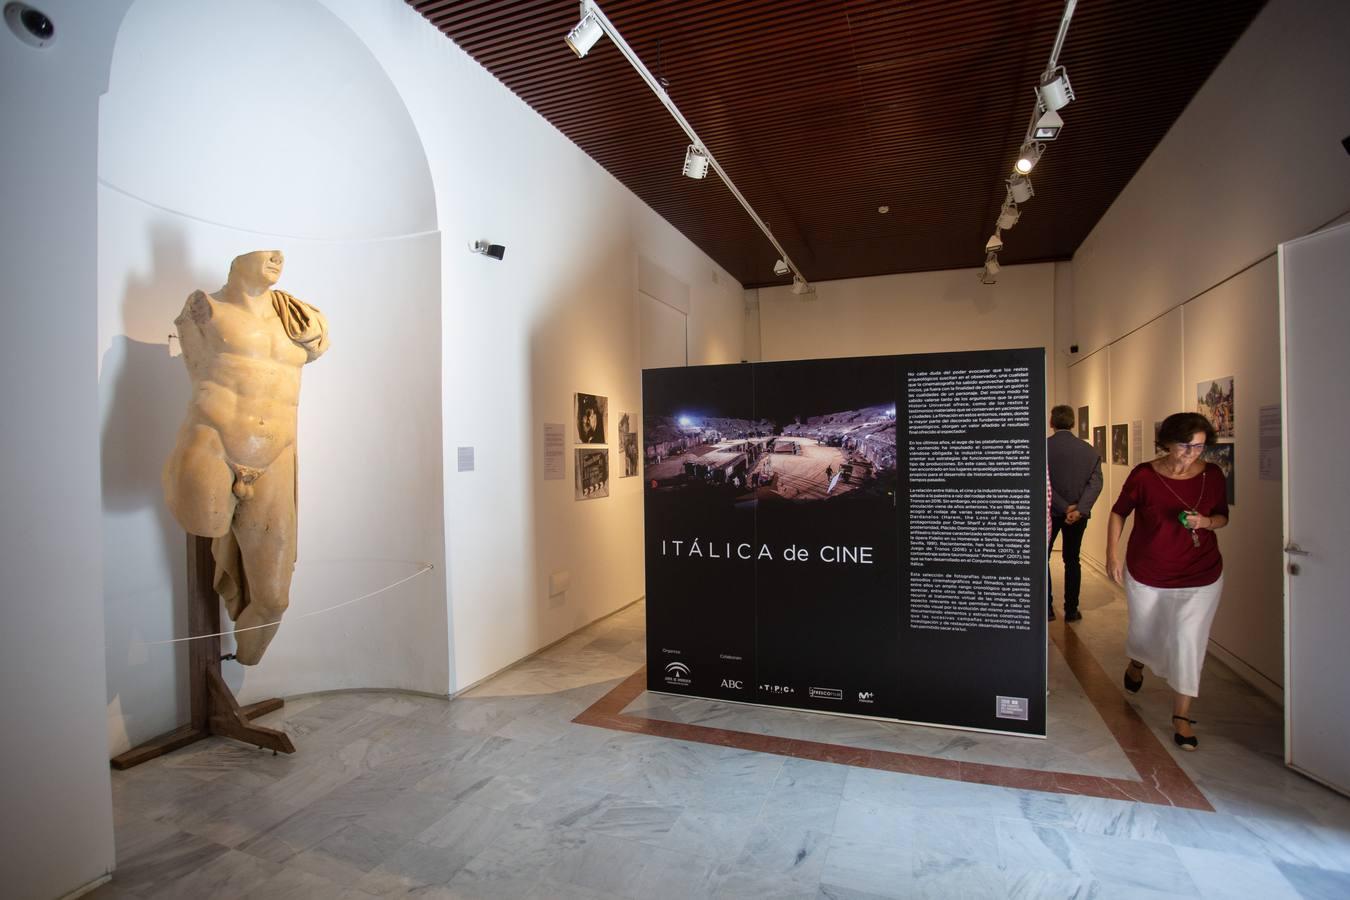 Nueva exposición: Itálica, un plató de cine en Sevilla